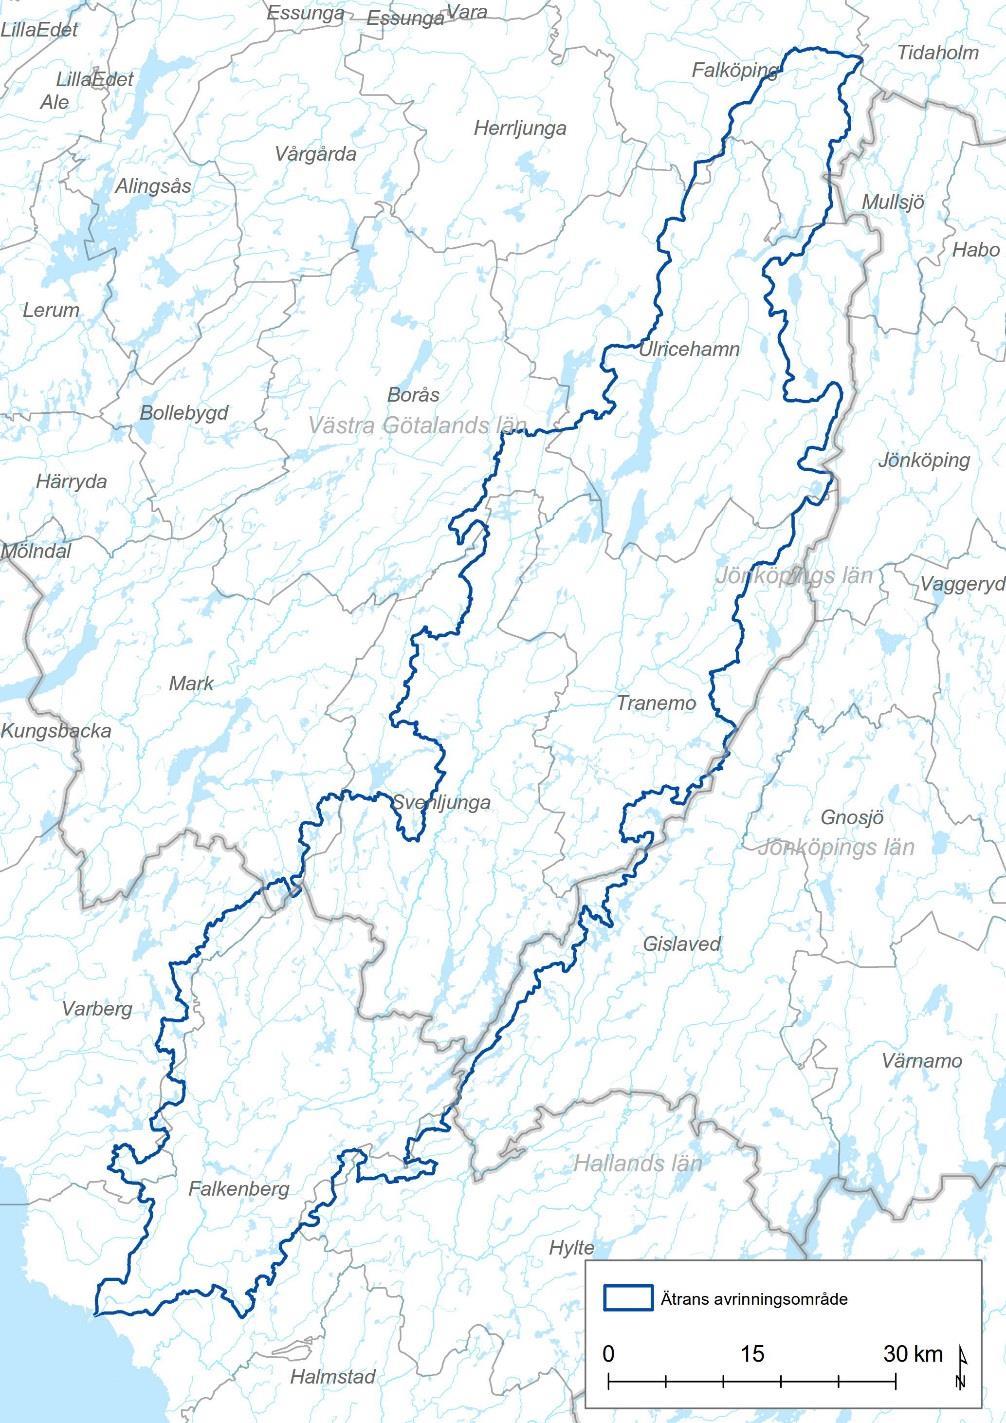 2 Ätrans avrinningsområde Ätrans avrinningsområde är 3 342 km 2 (Figur 2). Ätran rinner genom följande kommuner; Falköping, Ulricehamn, Tranemo, Svenljunga och Falkenberg.